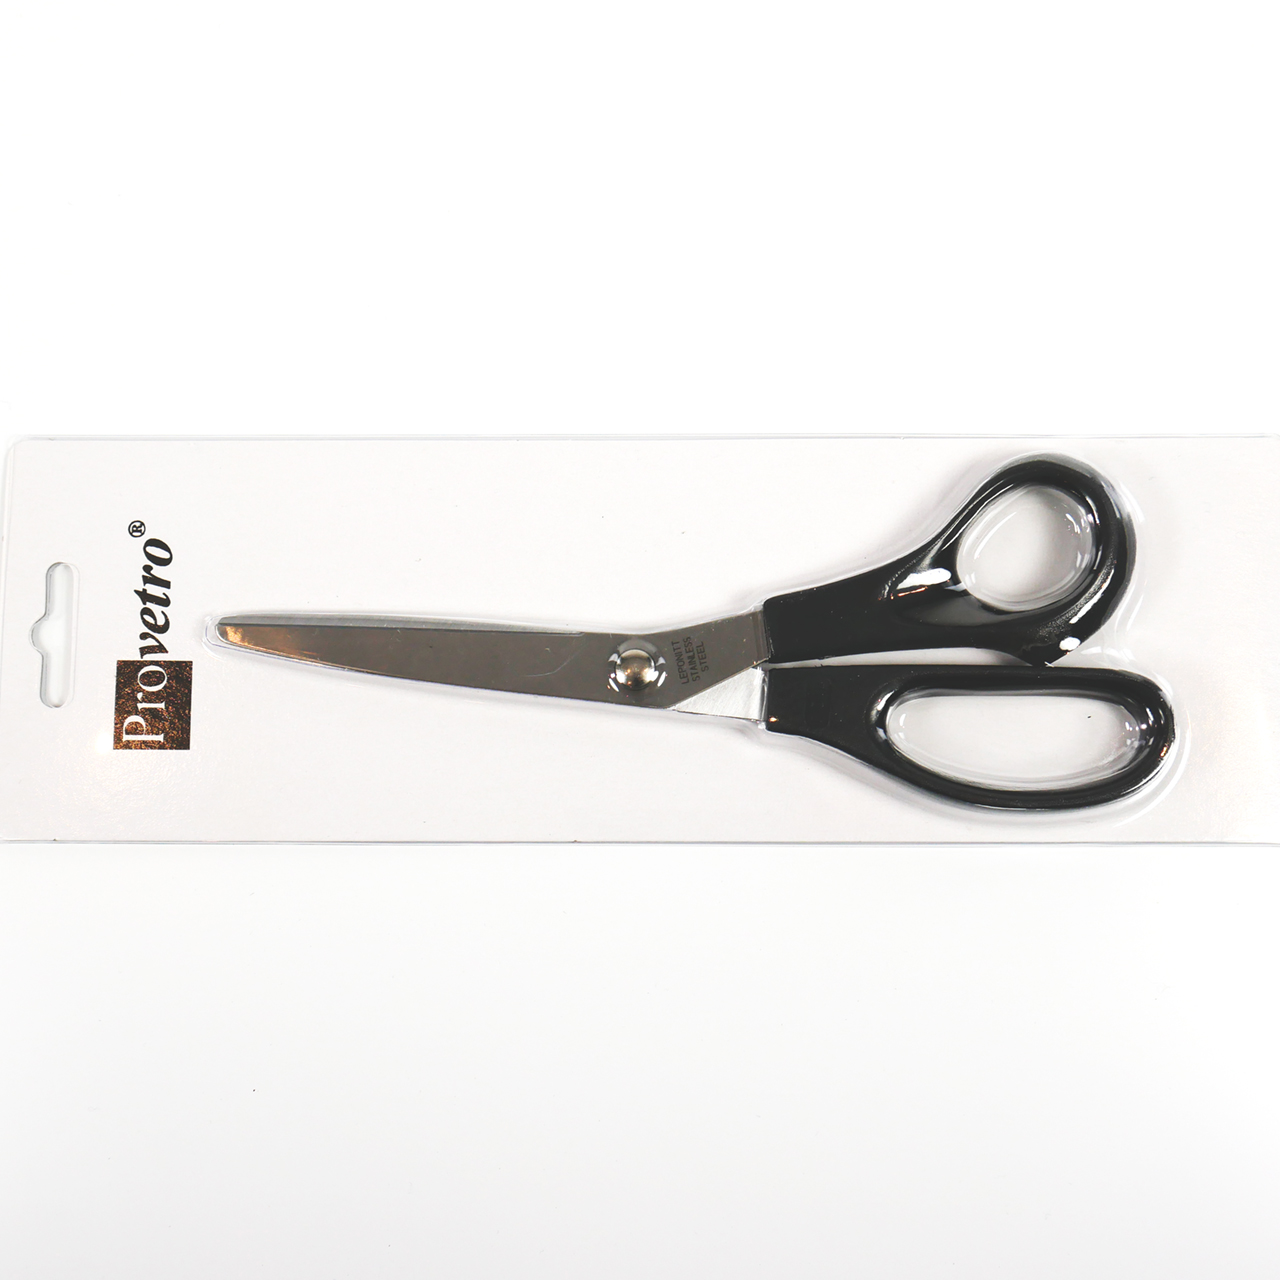 PROVETRO pattern scissors for copper foil technique